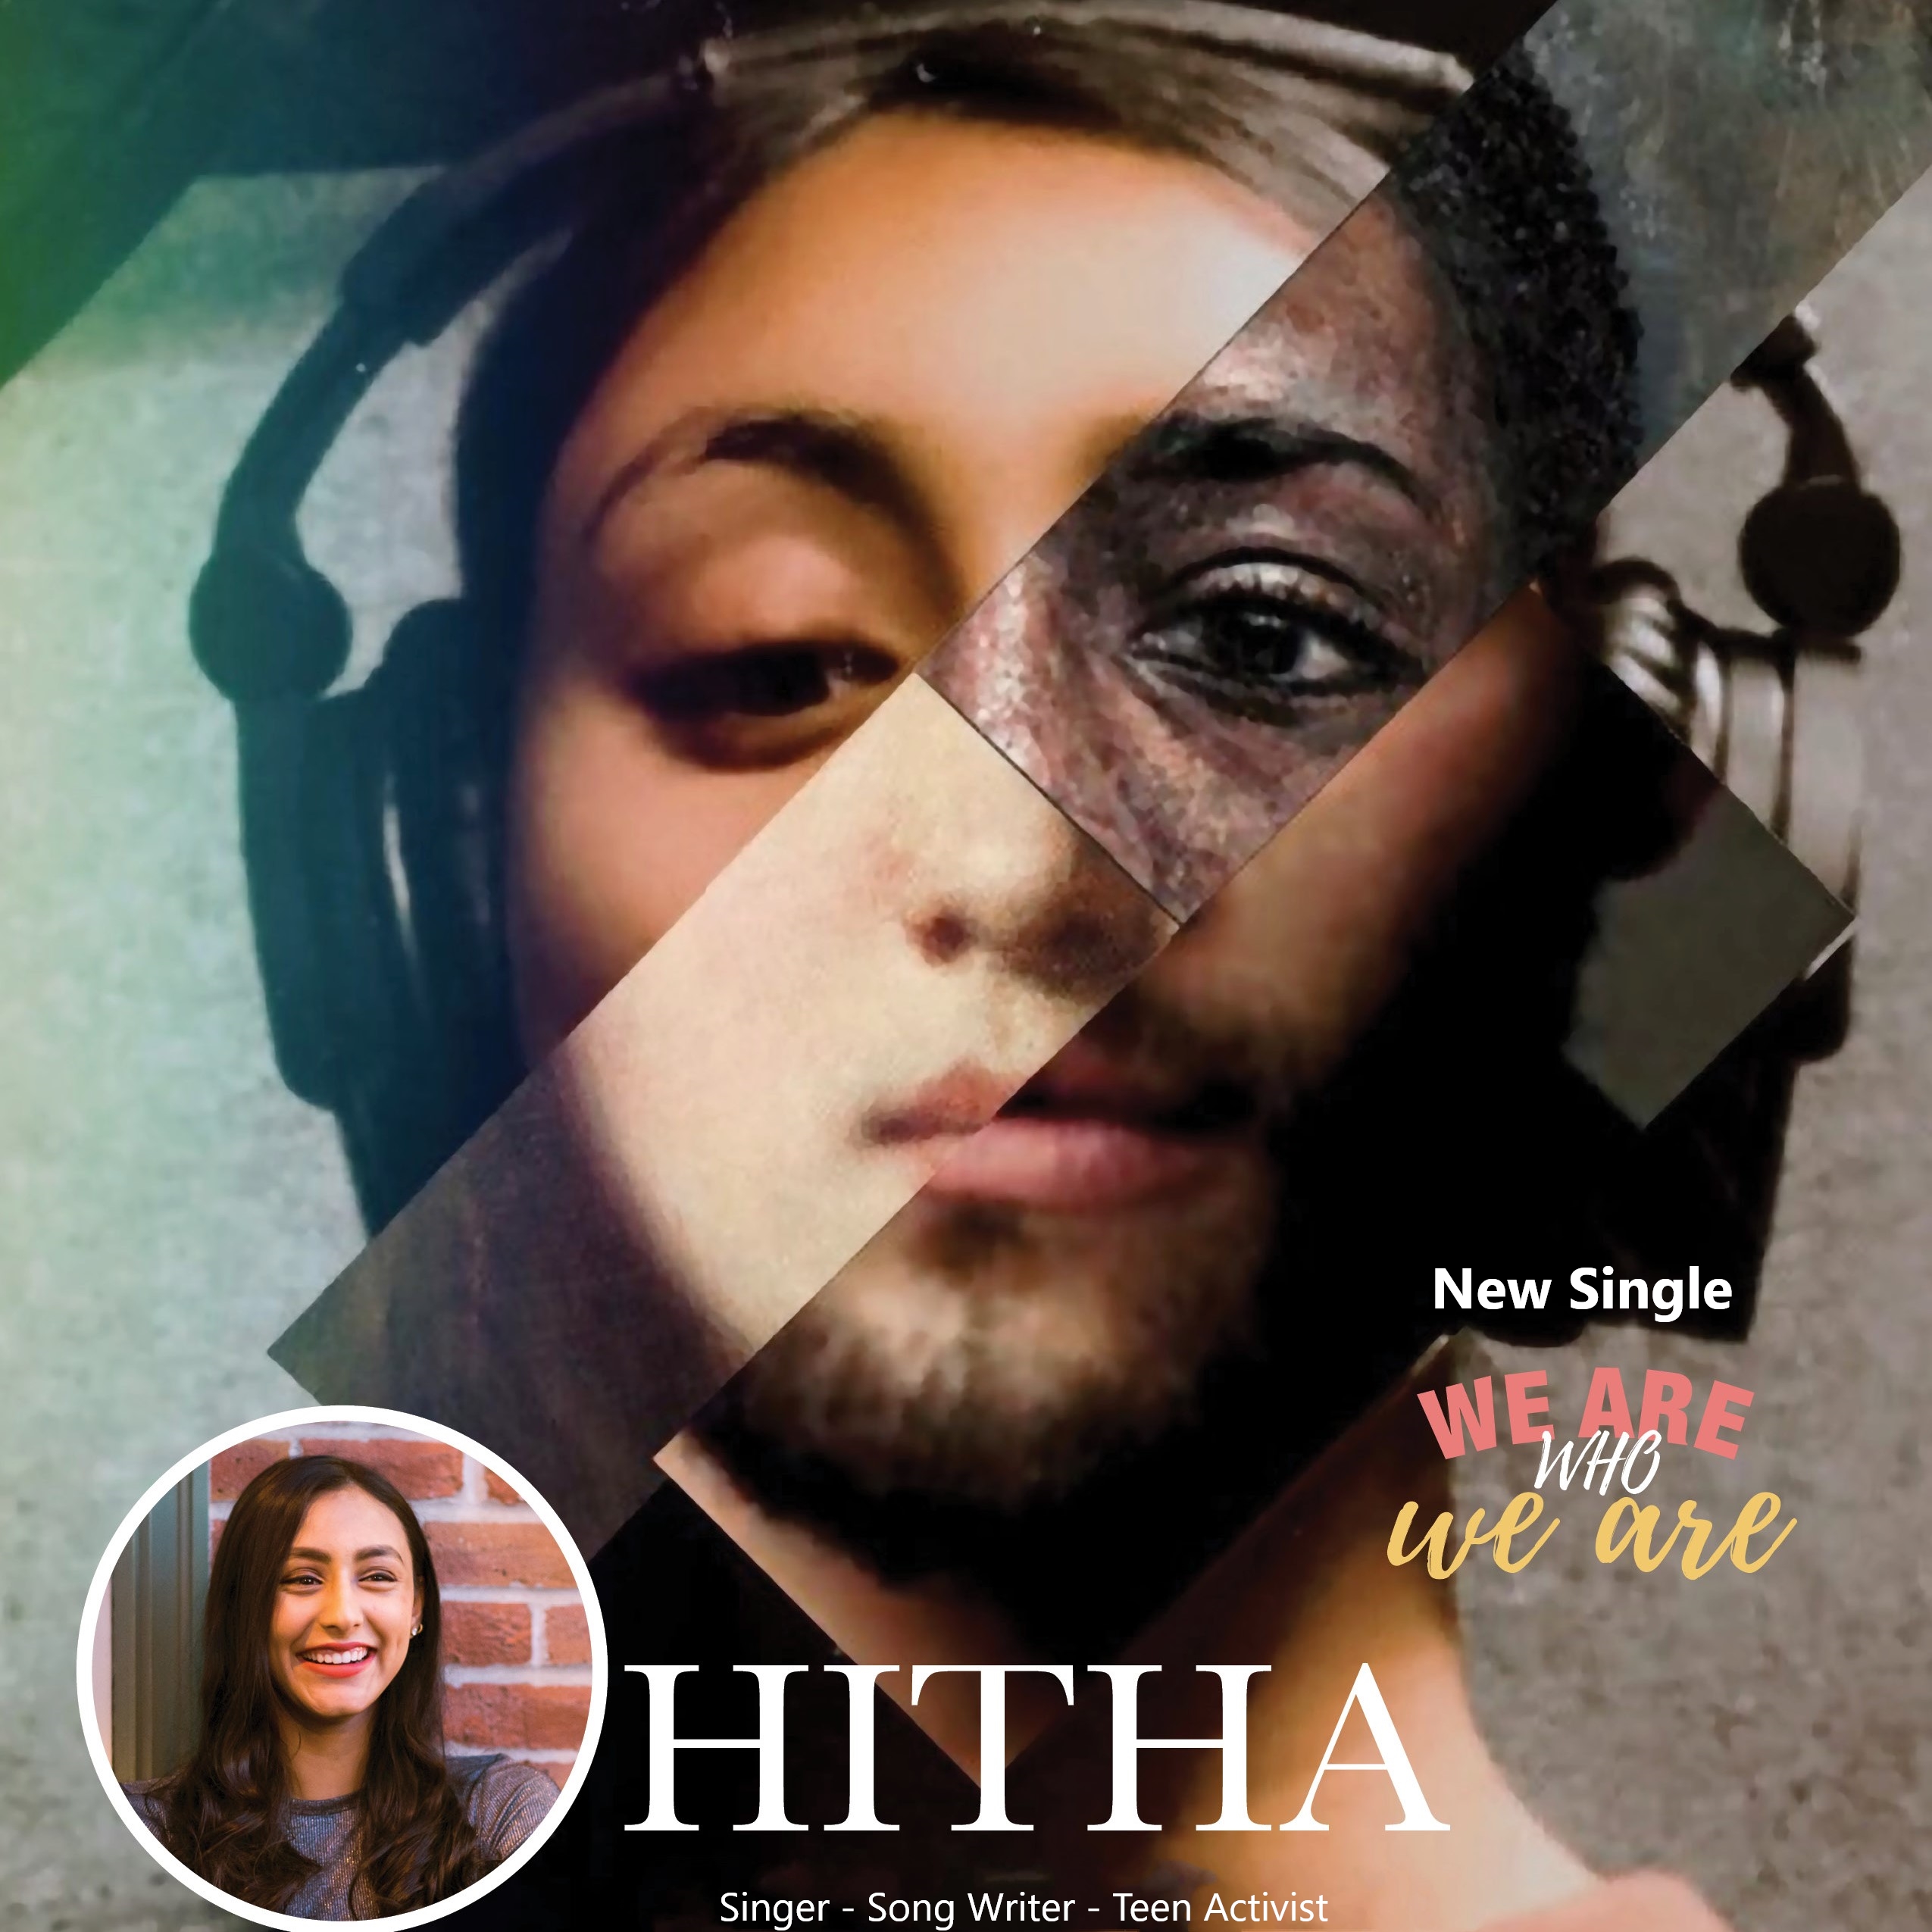 Vega Digital Awards Winner - We Are who We Are, Hitha